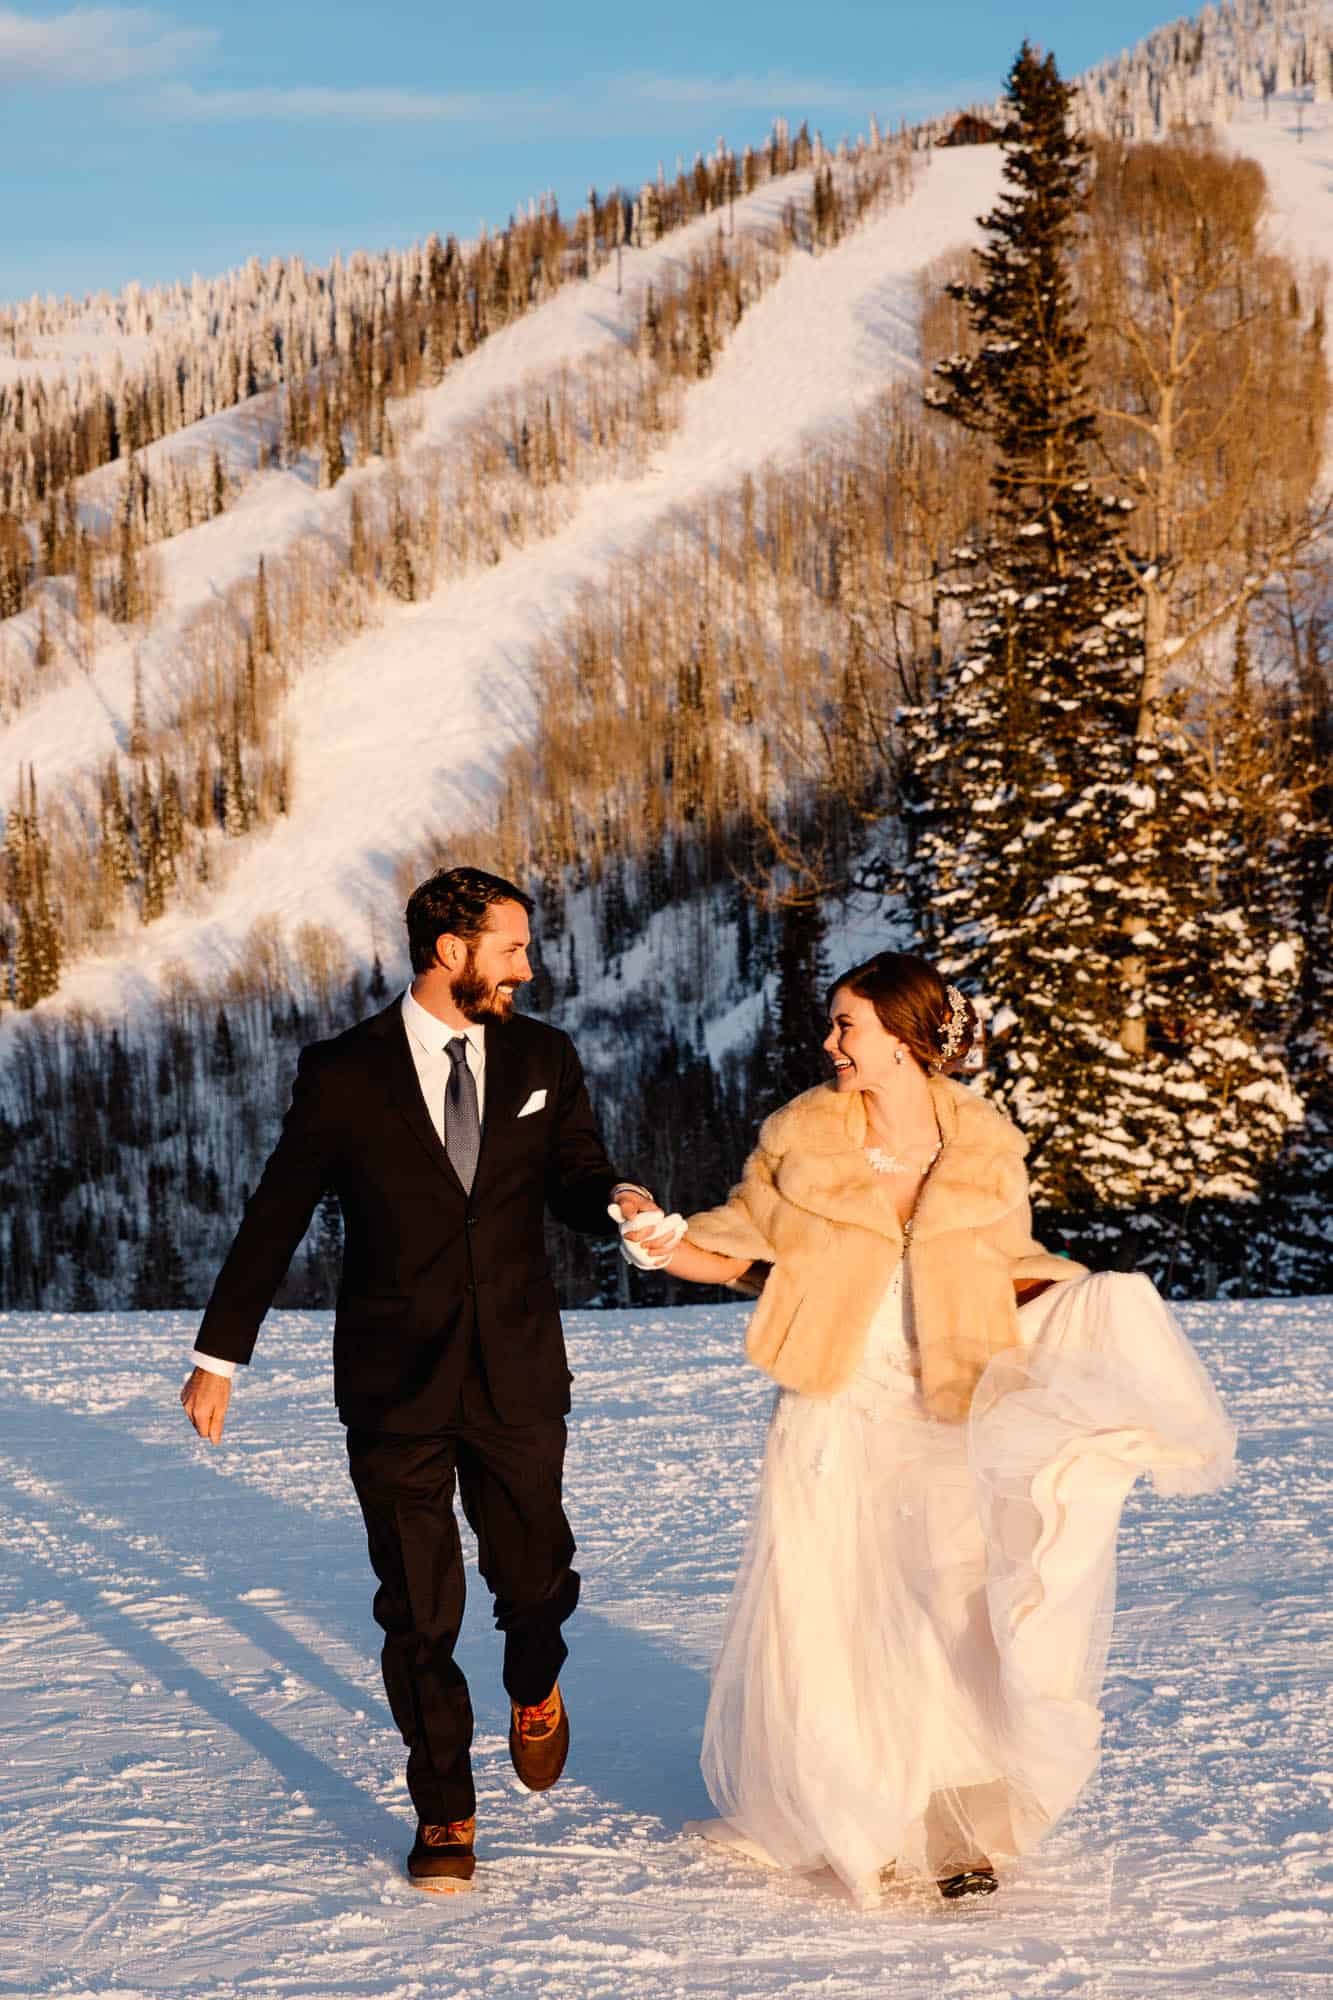 couple on the ski slopes of their wedding day